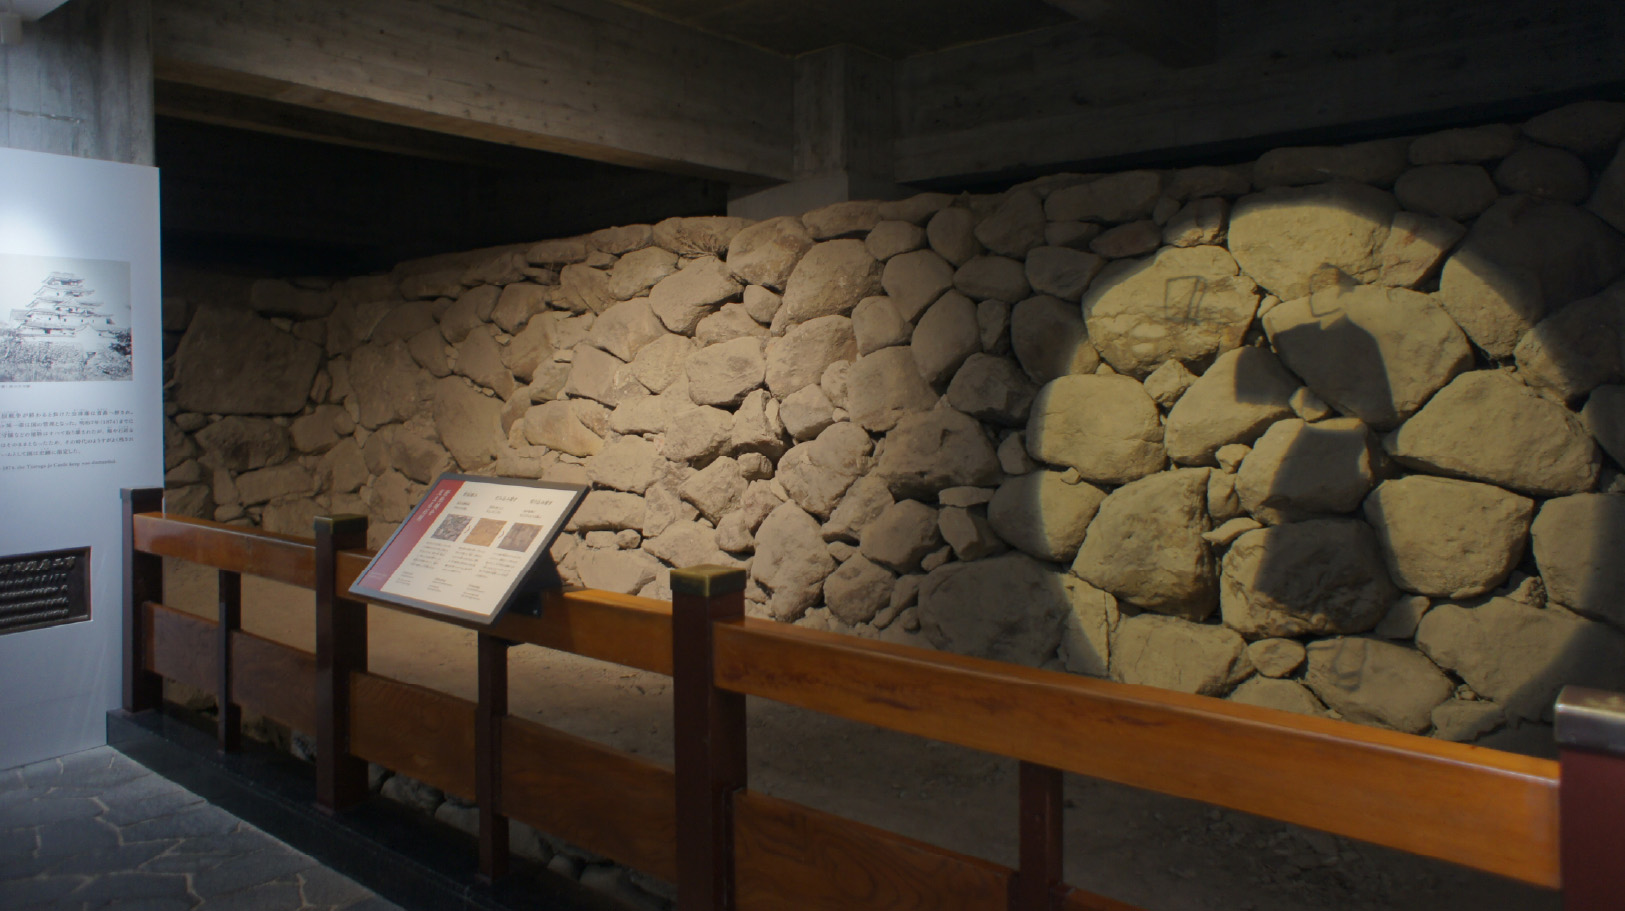 鶴ヶ城の石垣